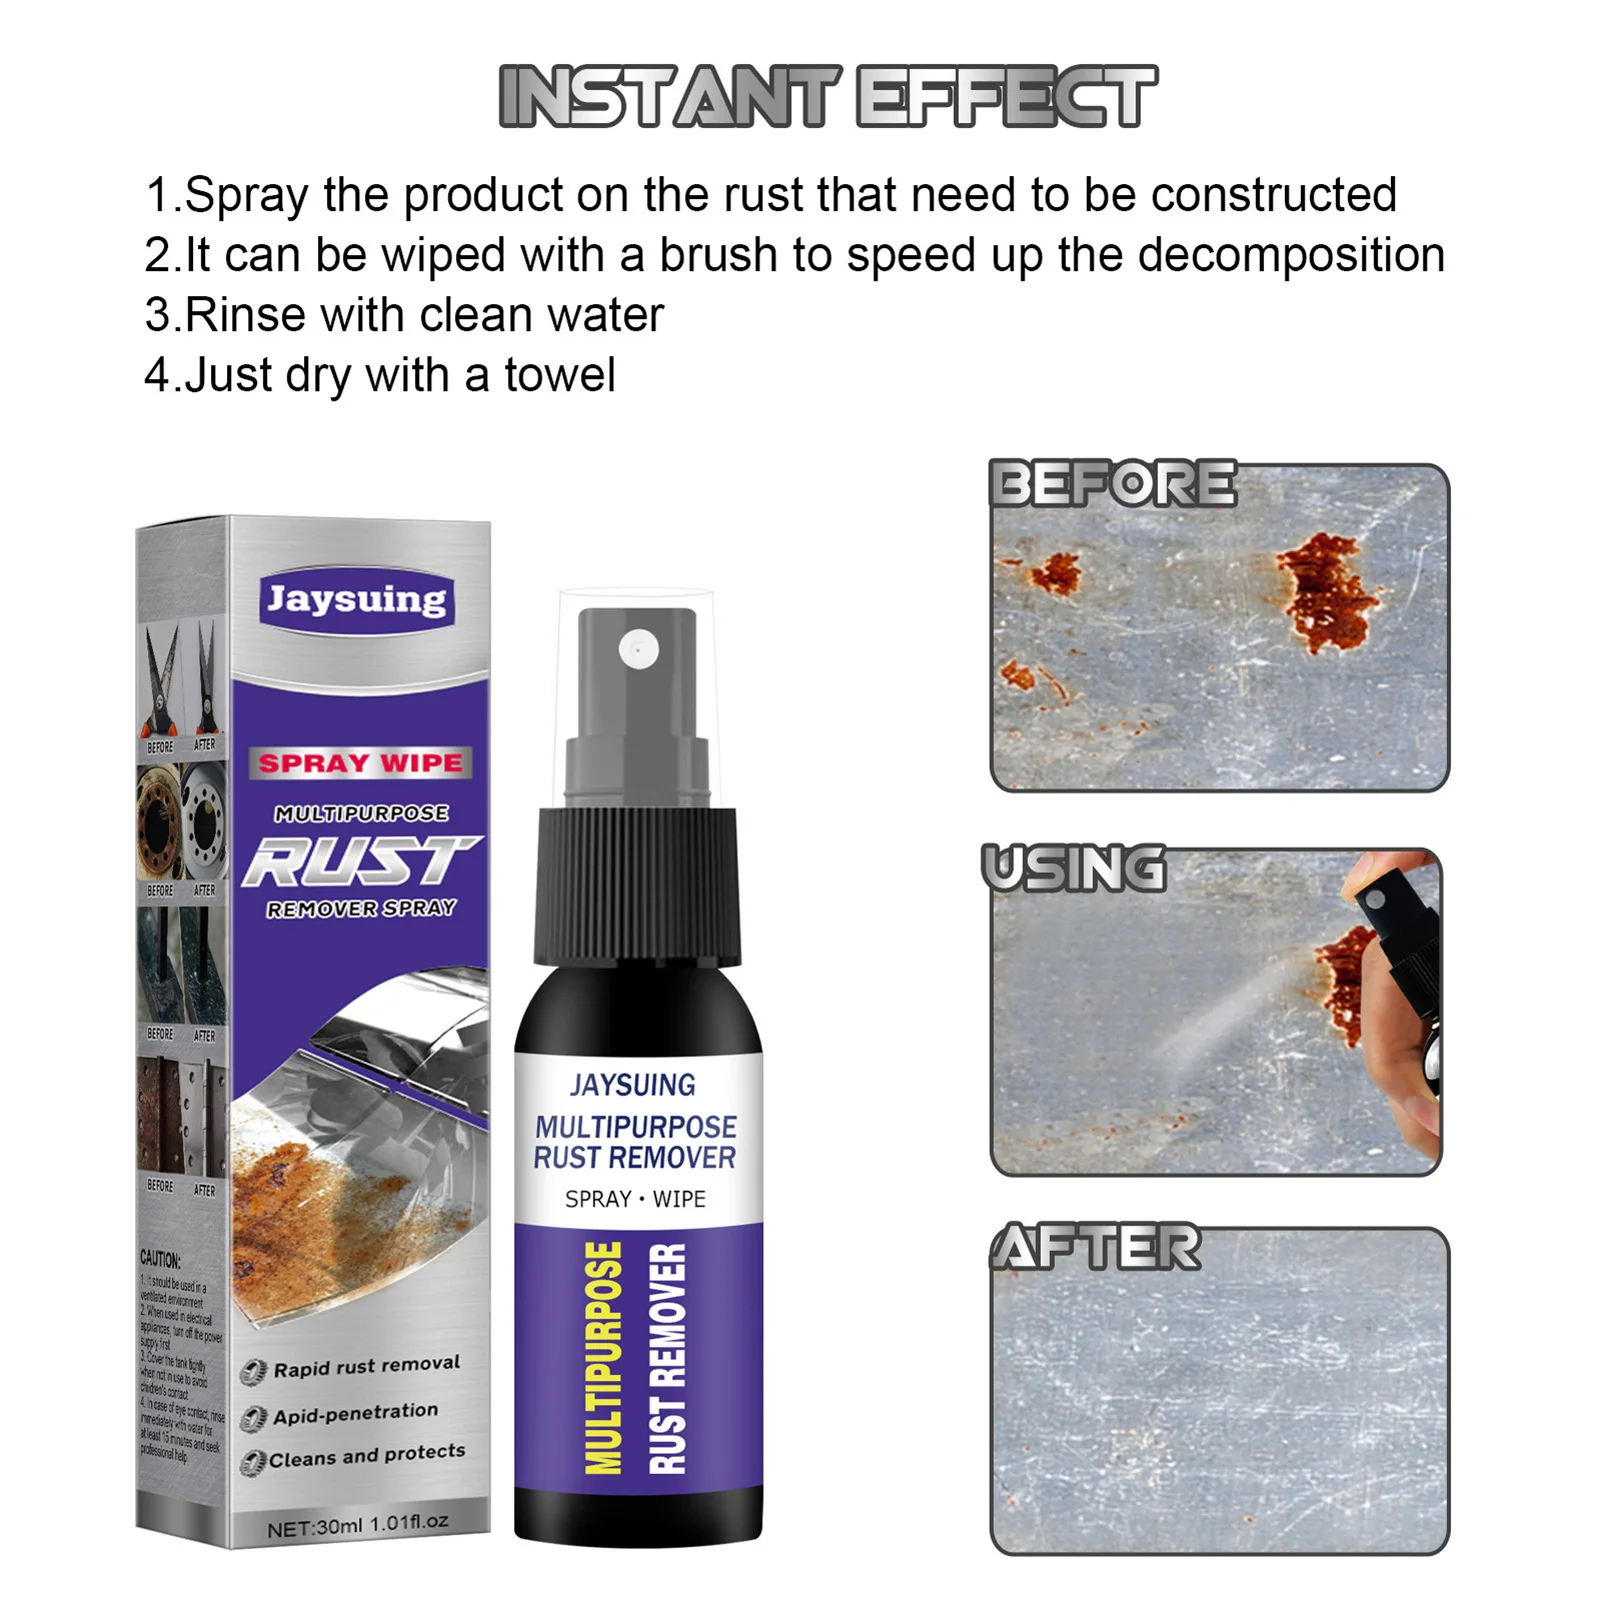 Rust cleaner spray как пользоваться фото 26